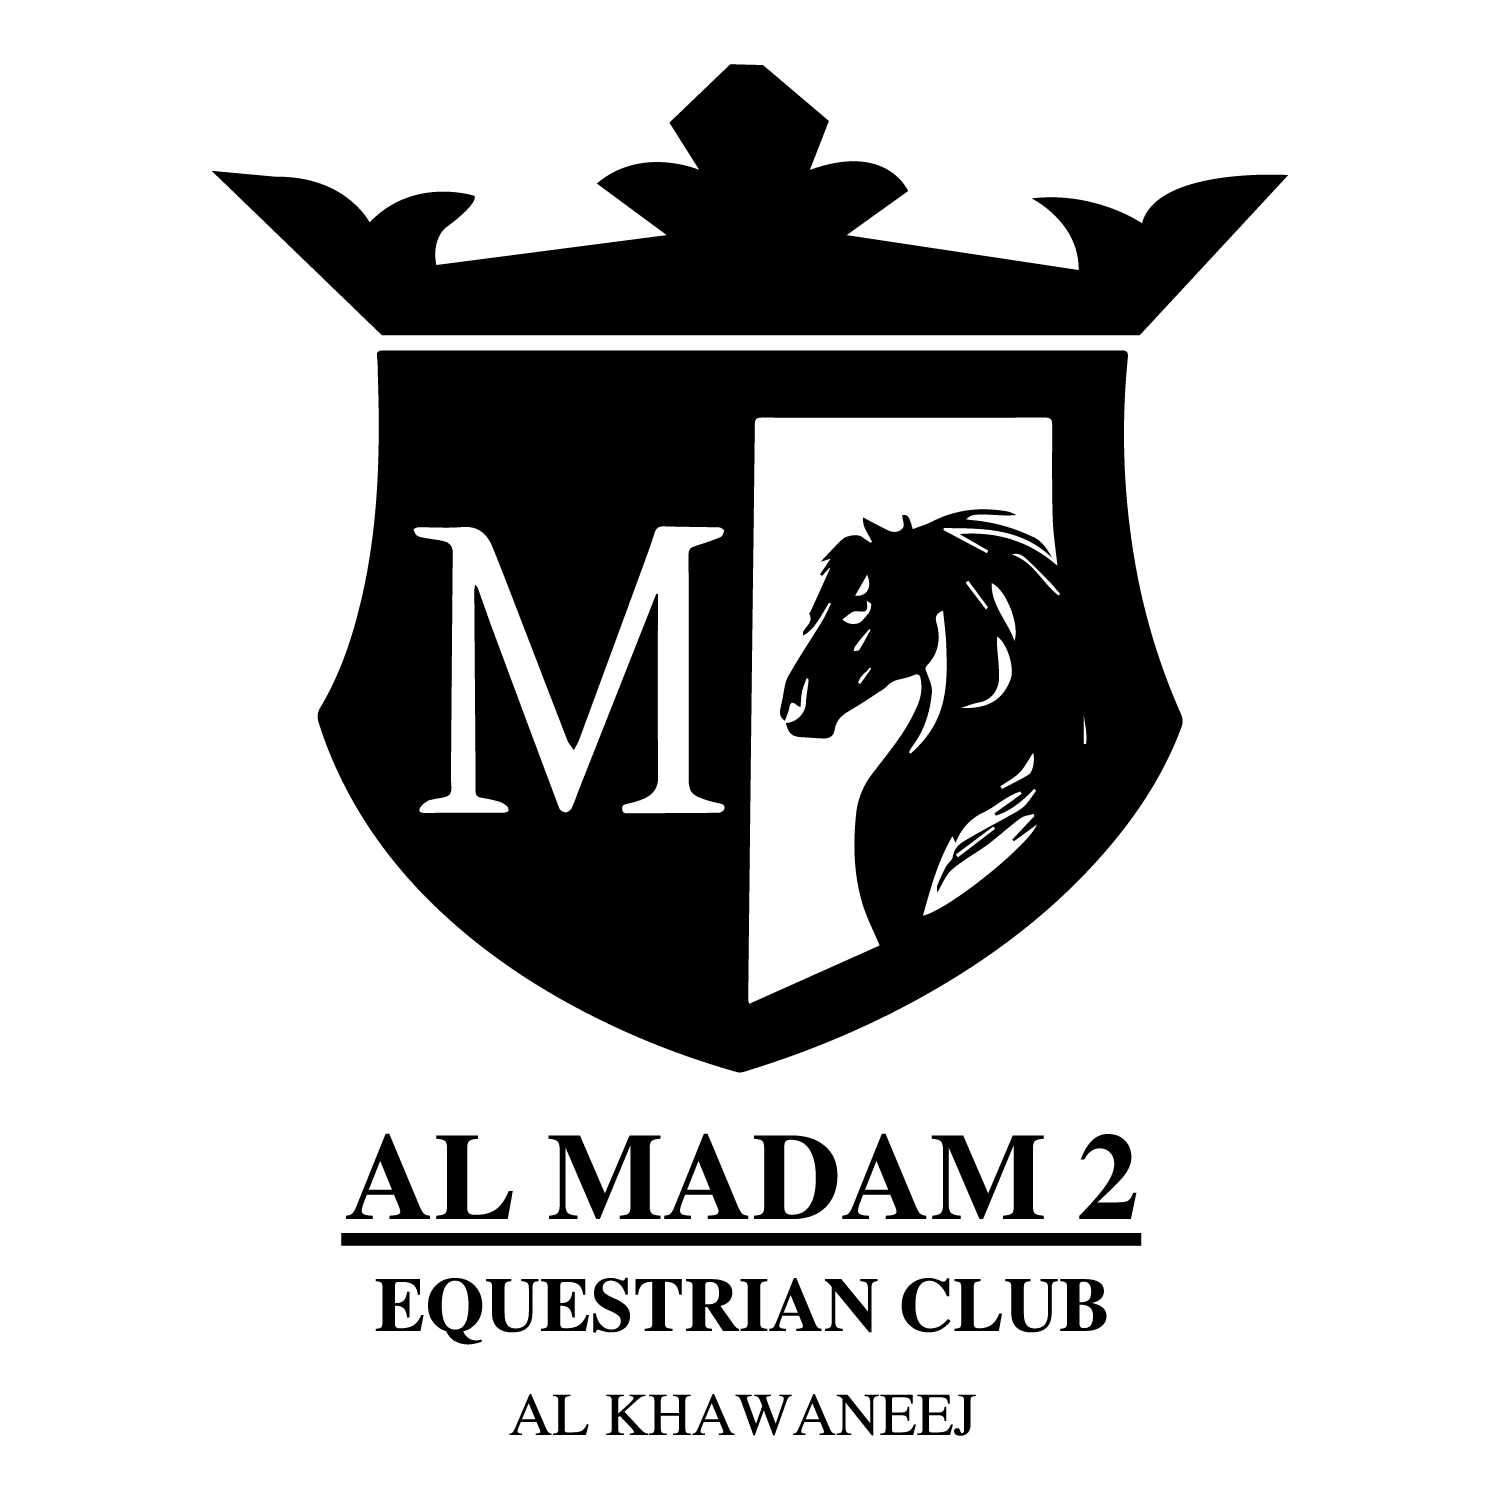 Al Madam 2 Equestrian Club